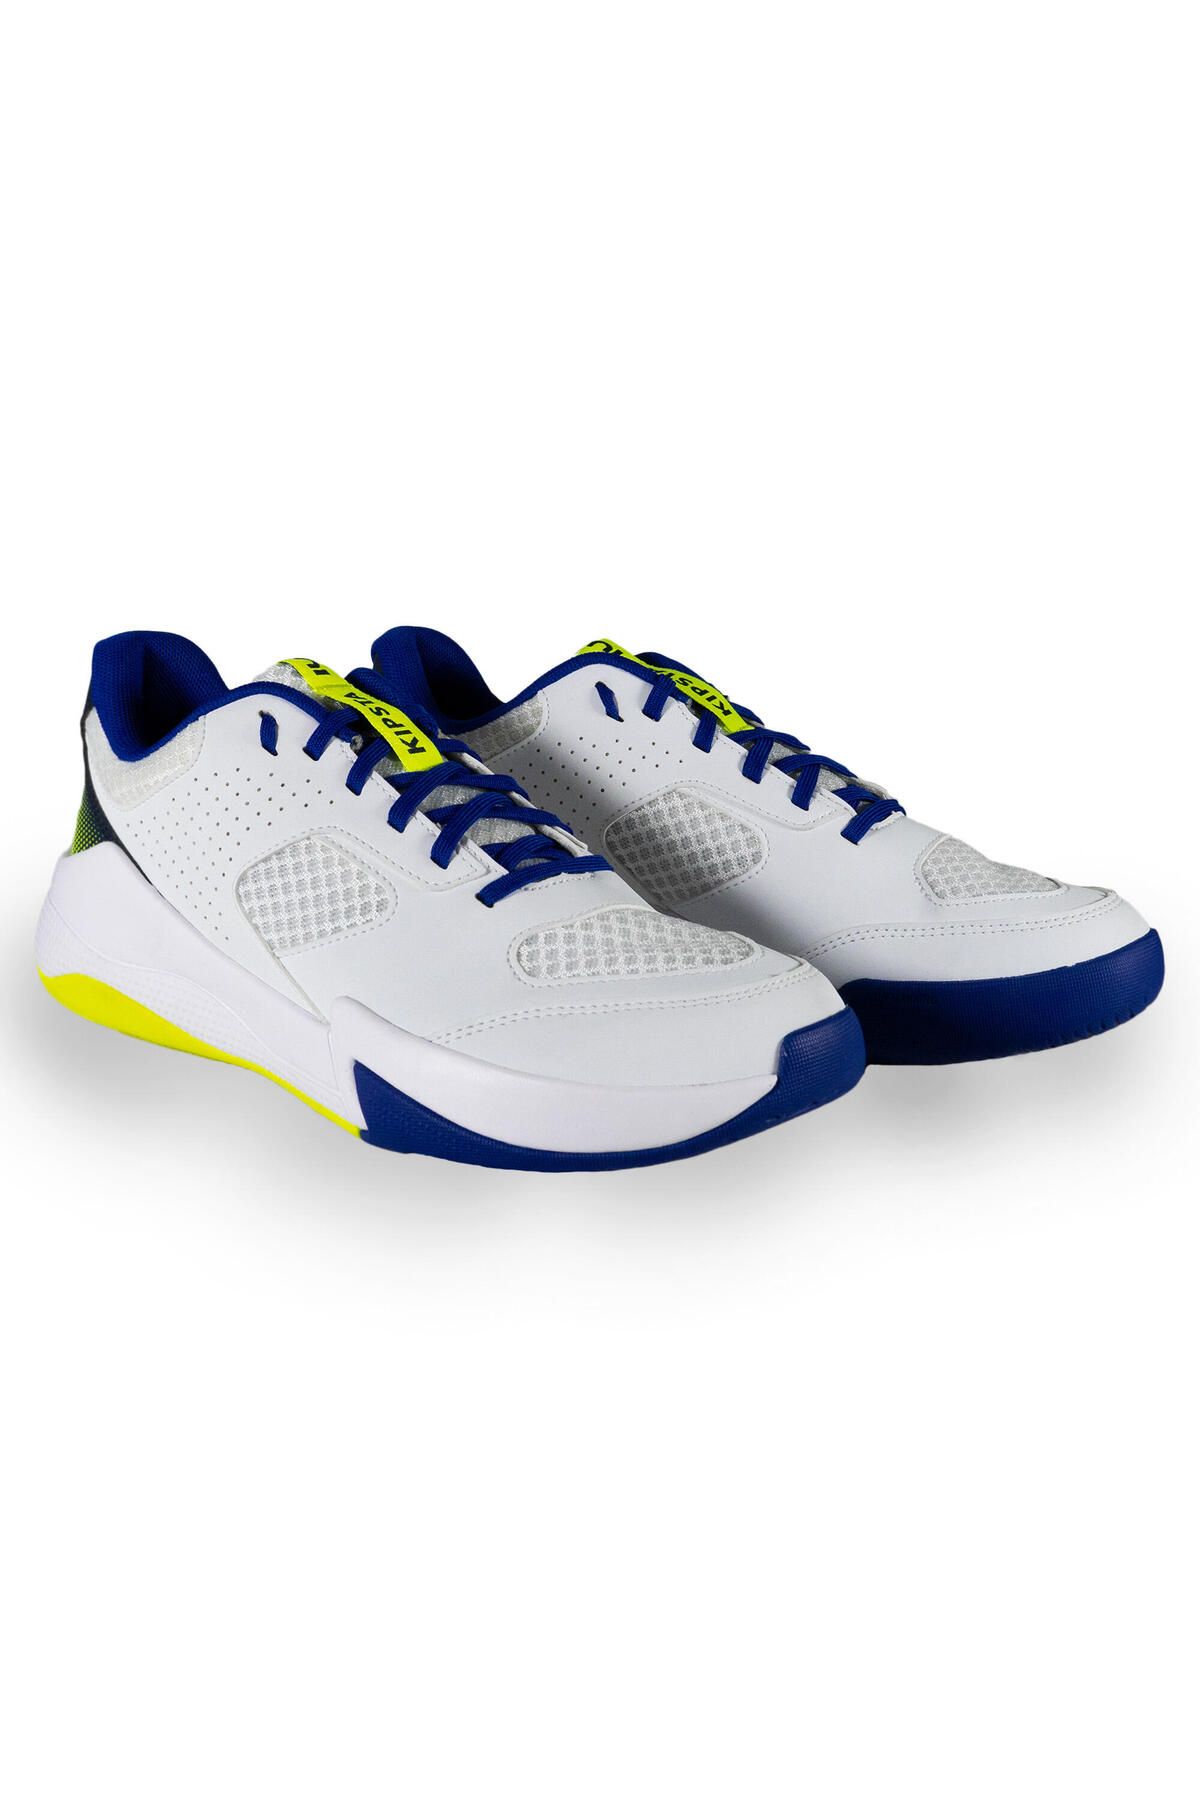 Decathlon Yetişkin Voleybol Ayakkabısı - Beyaz / Mavi / Neon Sarı - Comfort